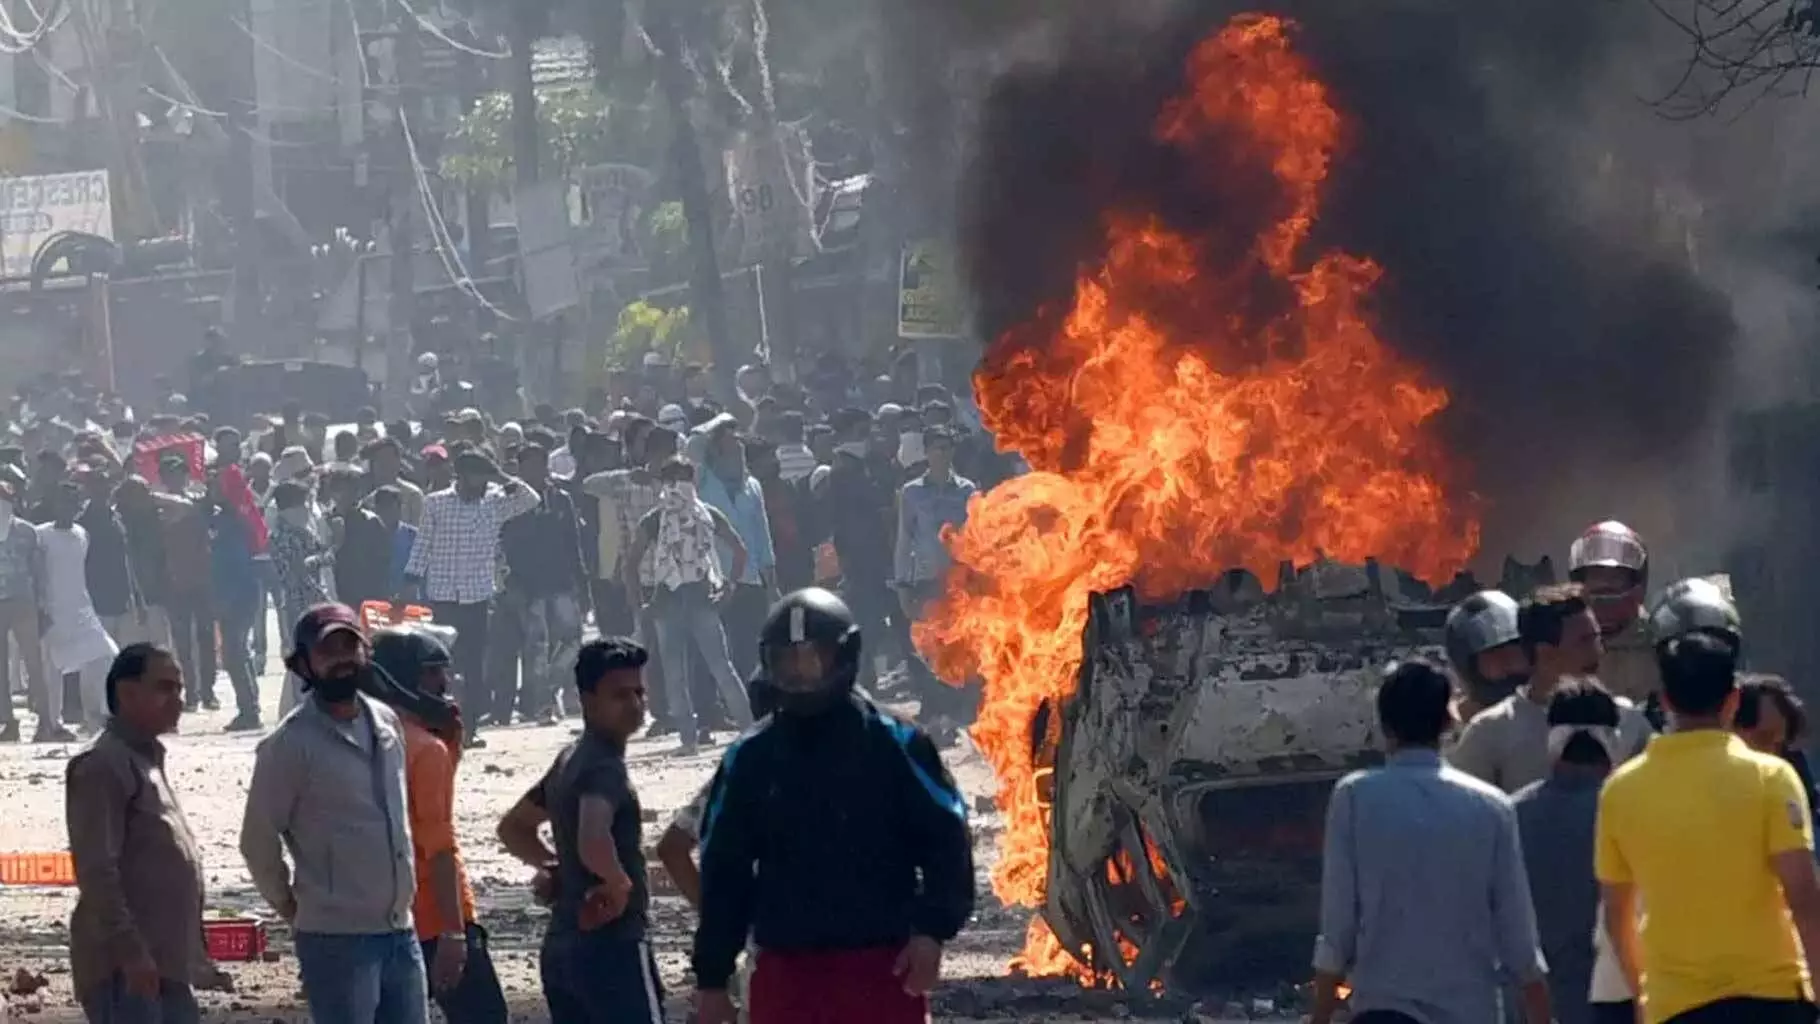 दिल्ली दंगों से जुड़े 7 वीडियो में पुलिसवाले बरसा रहे पत्थर?, गृह विभाग ने की कार्रवाई की मांग